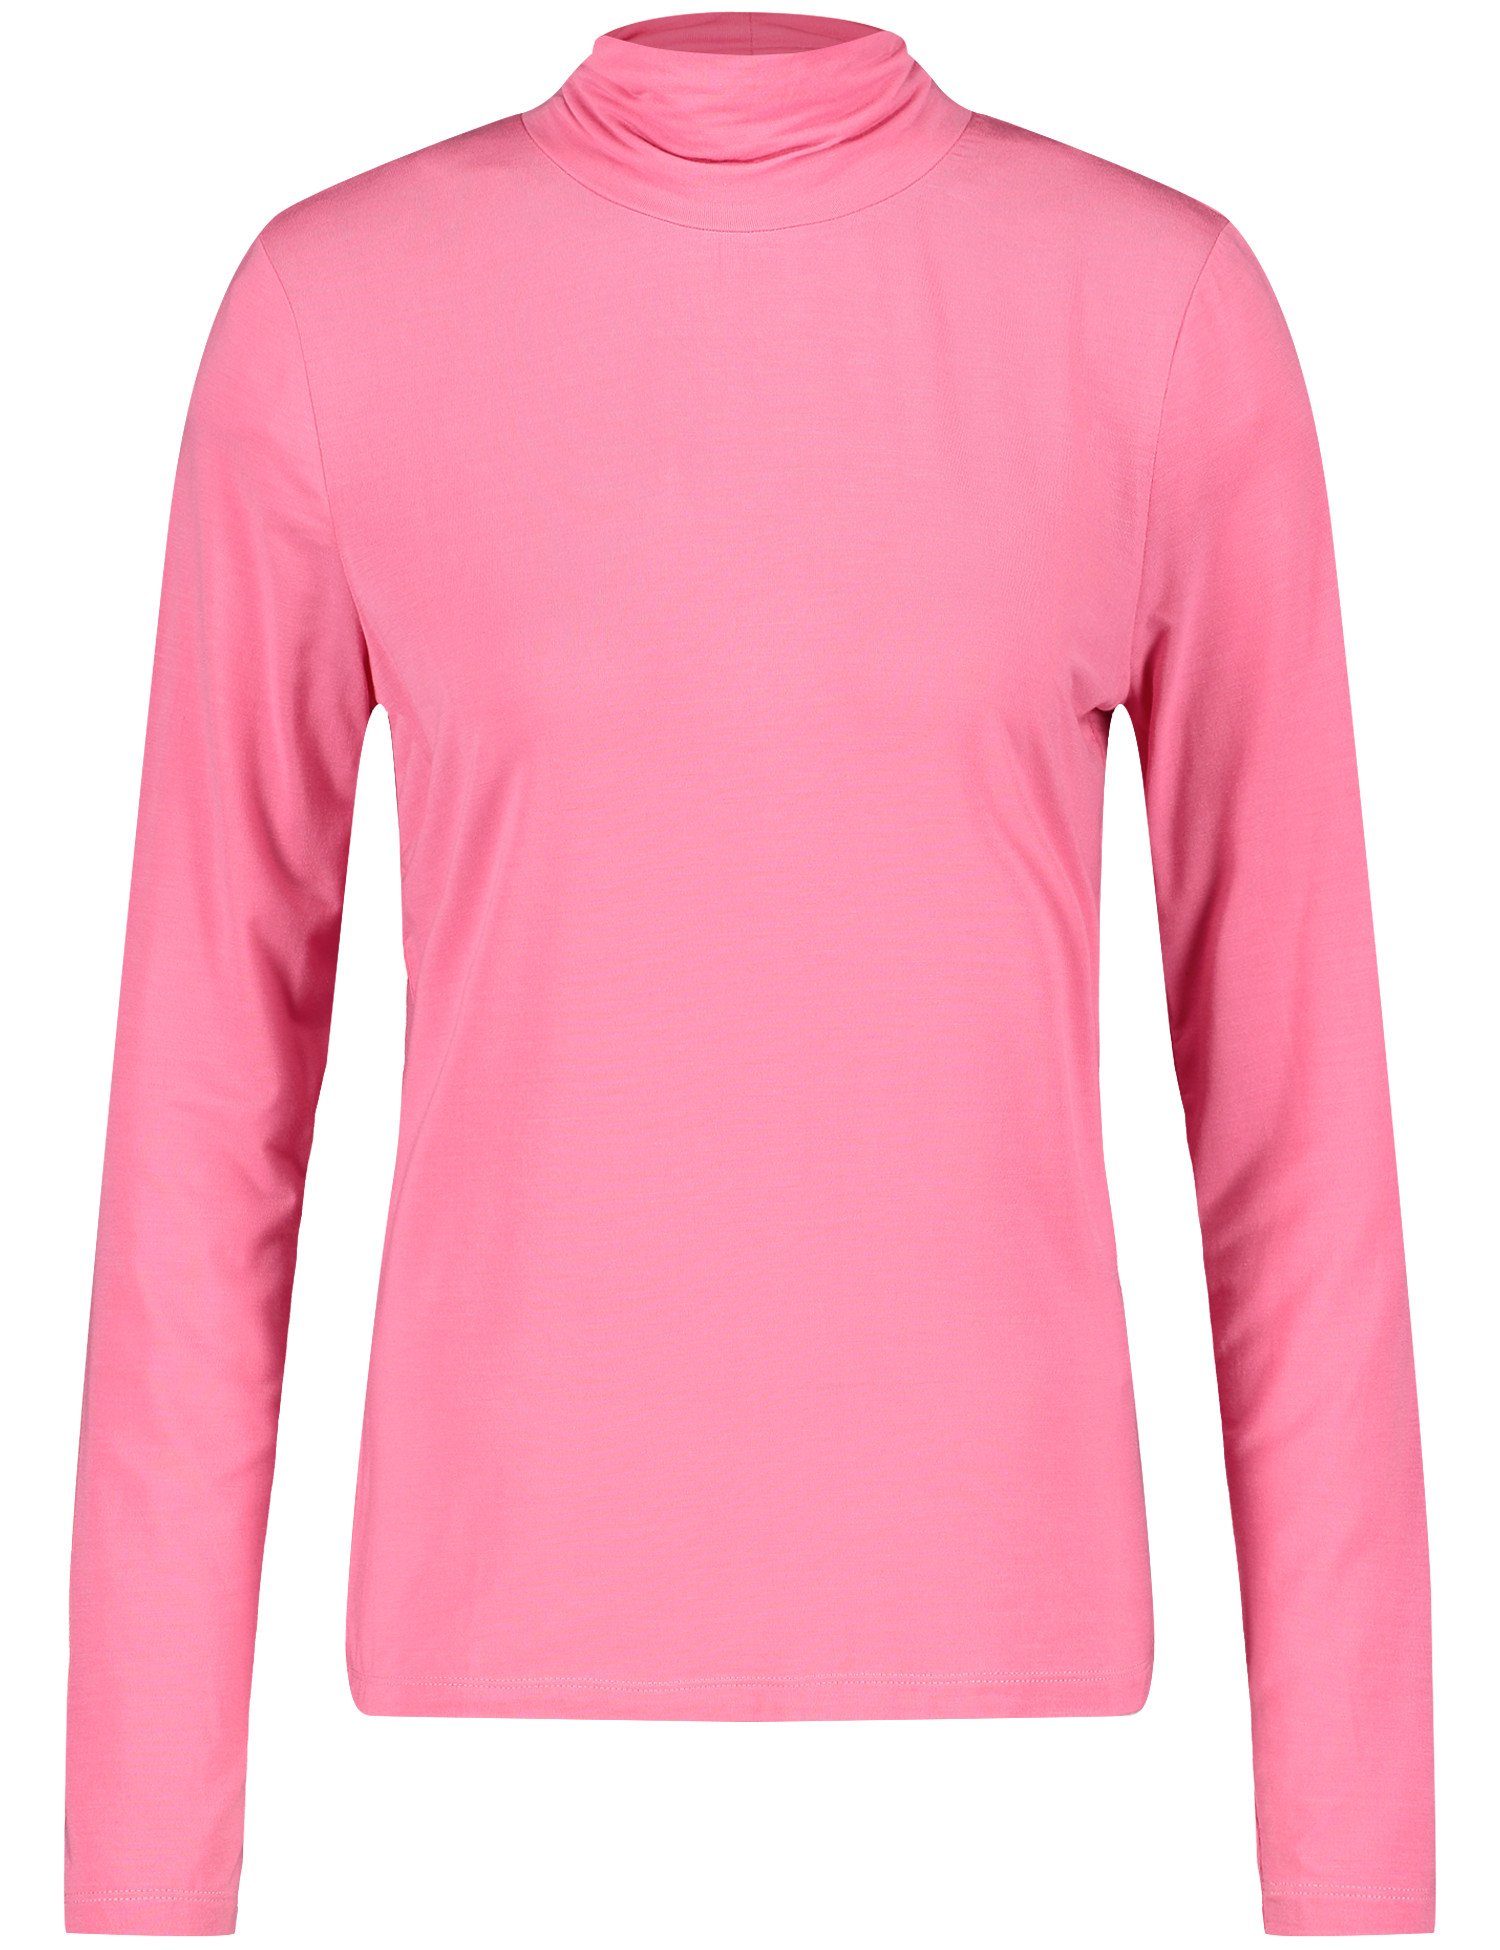 GERRY ROSE WEBER 30894 PINK T-Shirt